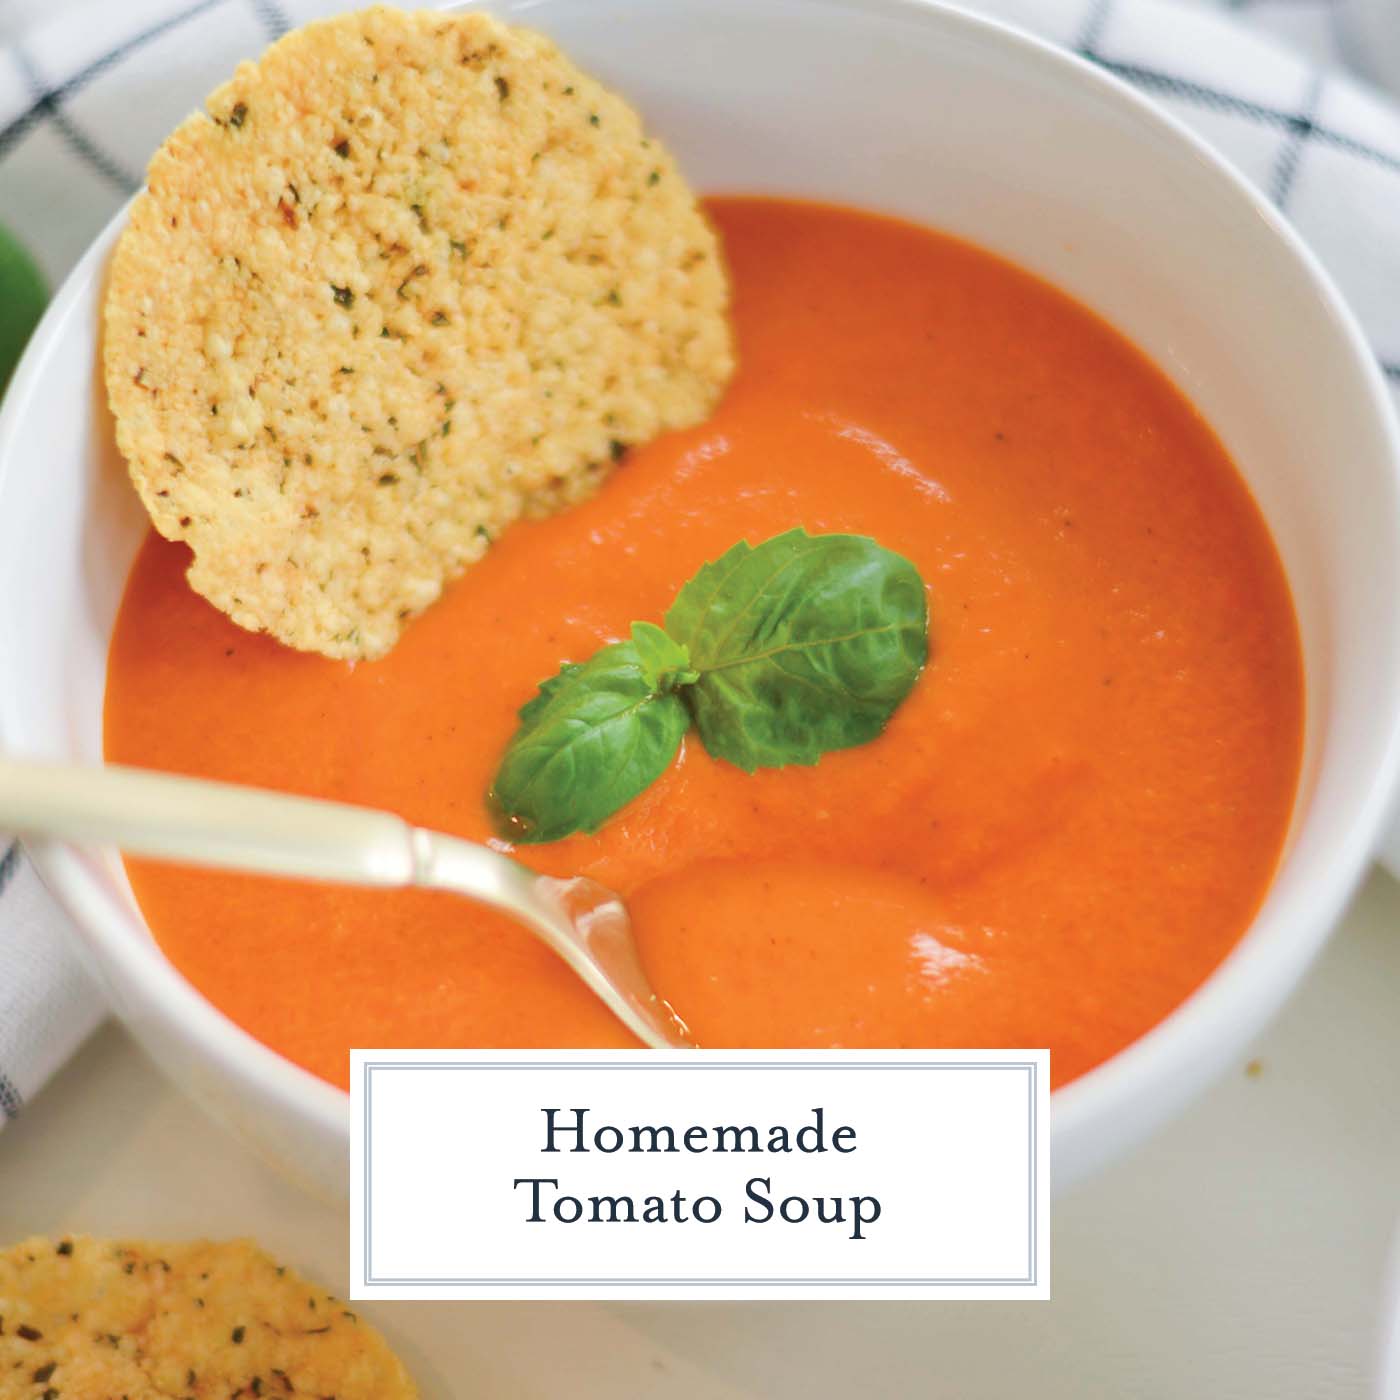 Homemade Tomato Soup - Thick, Creamy Tomato Soup Recipe